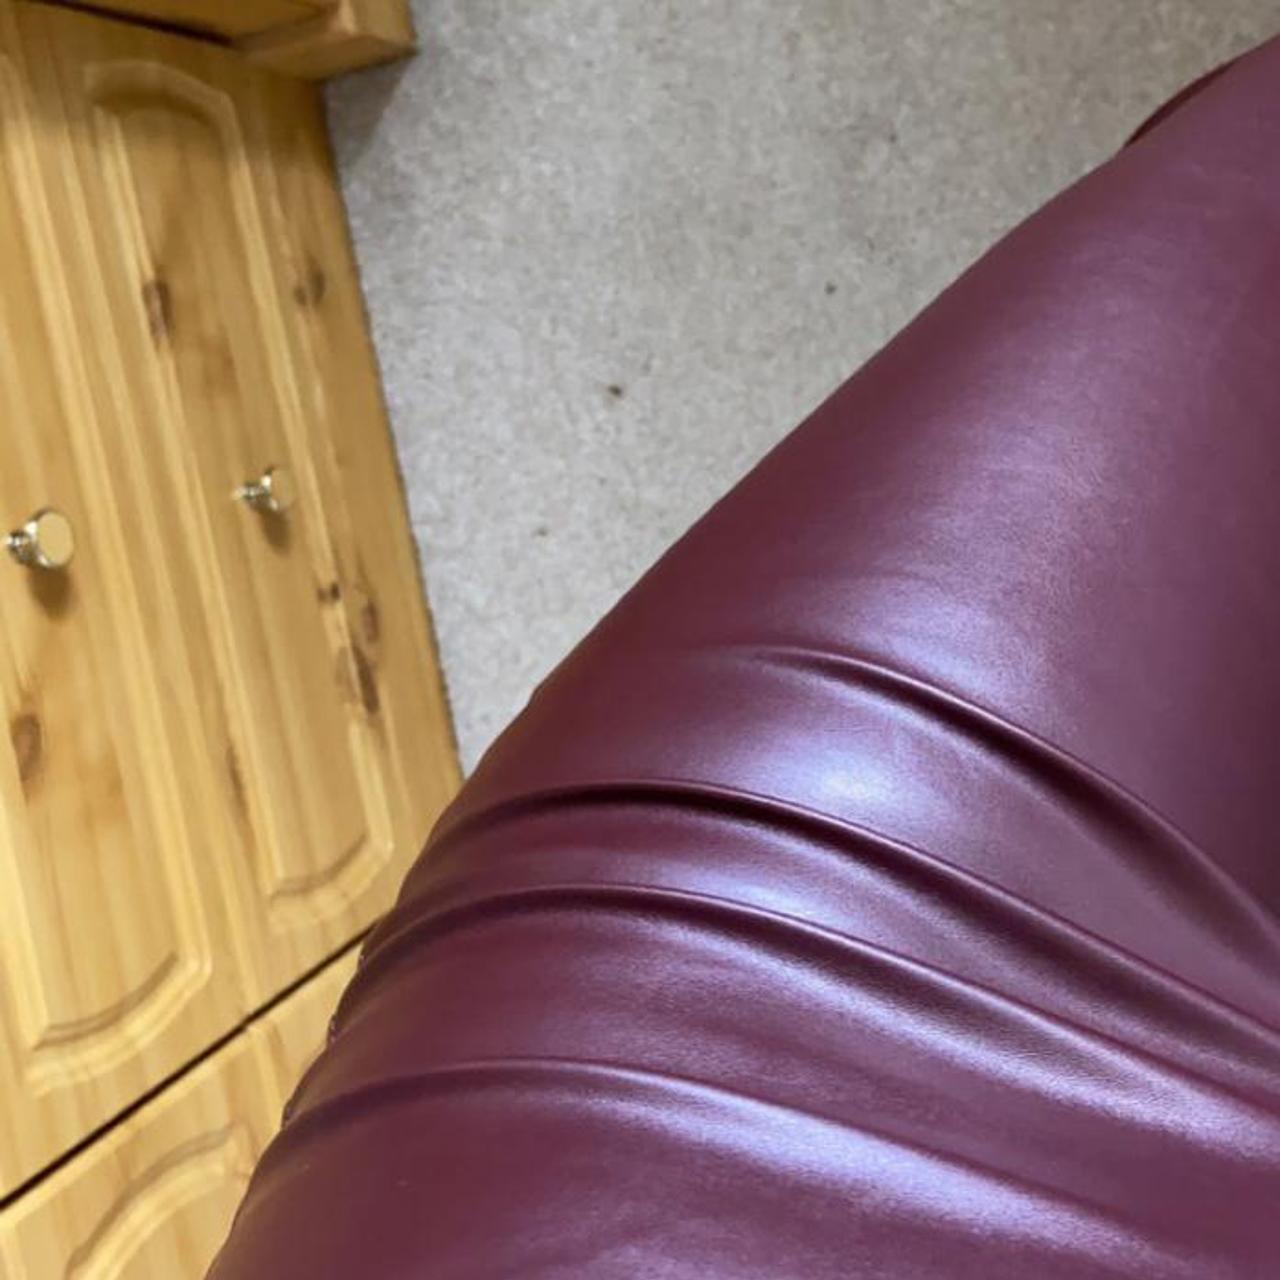 PLT burgundy faux leather leggings. Brand new, - Depop